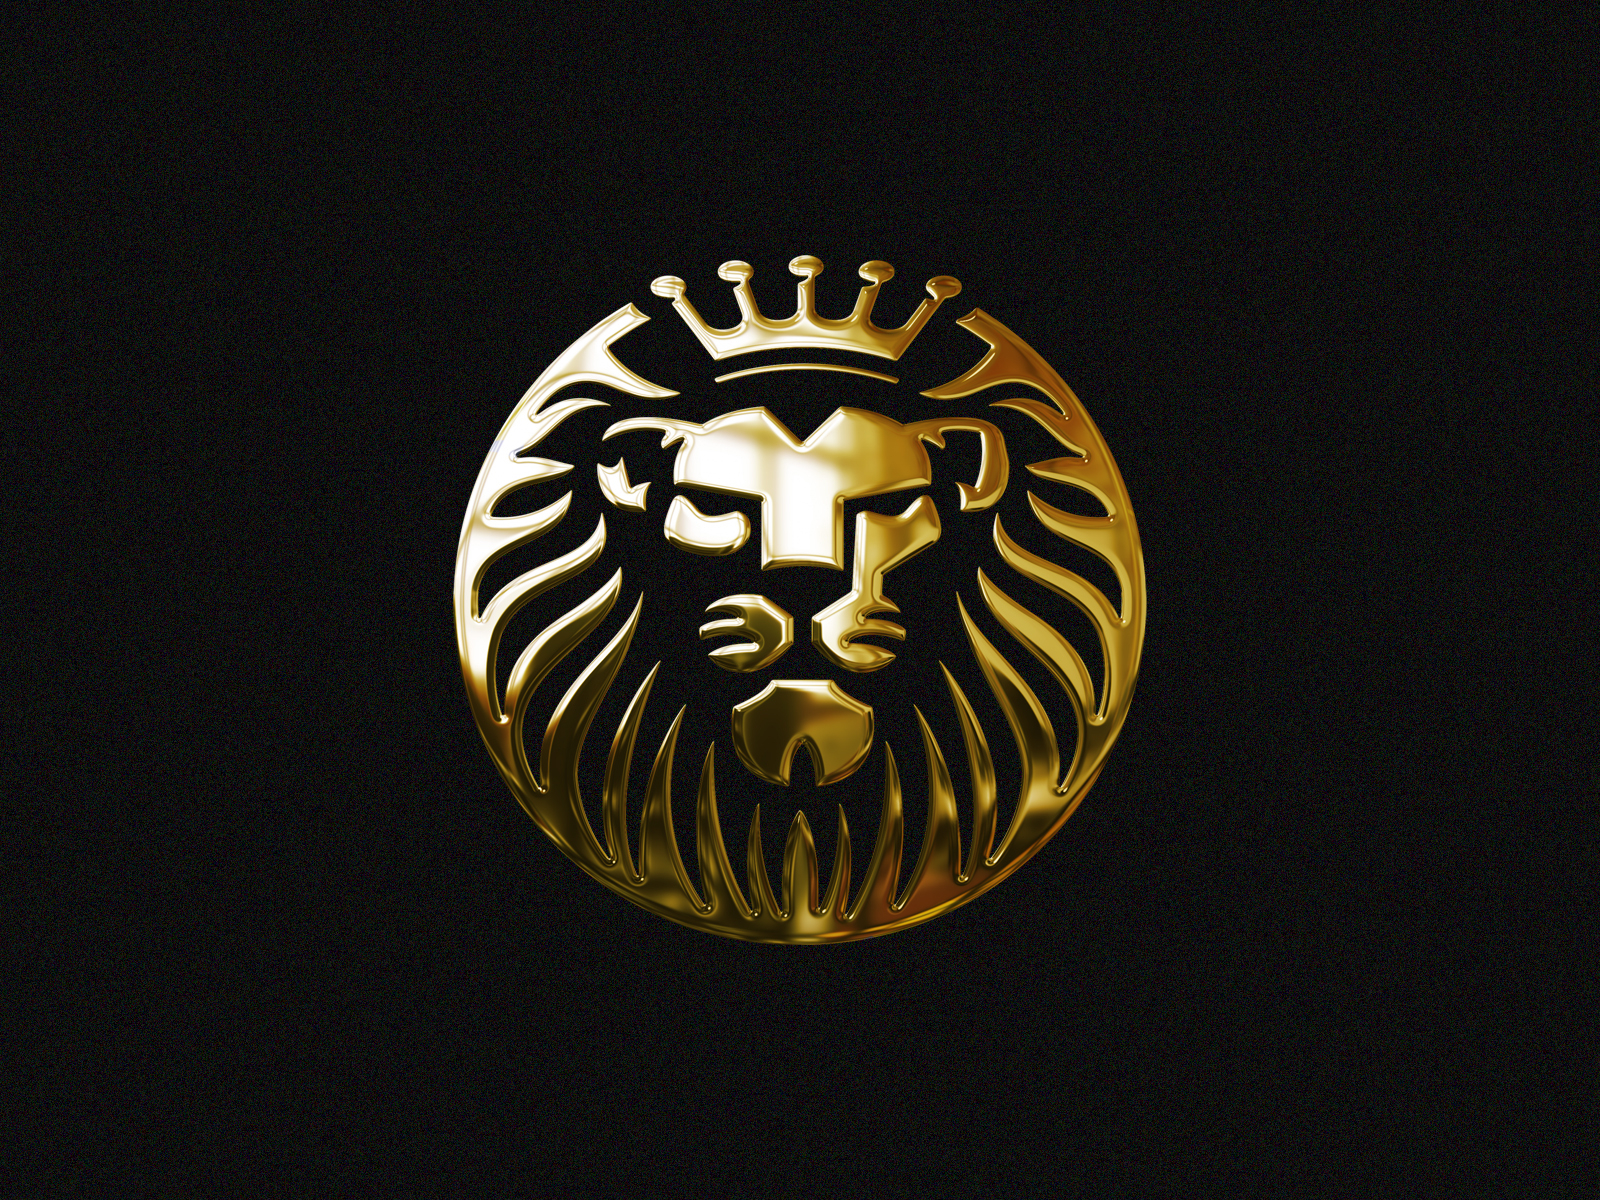 Royal Lion Logo by Shyam B on Dribbble